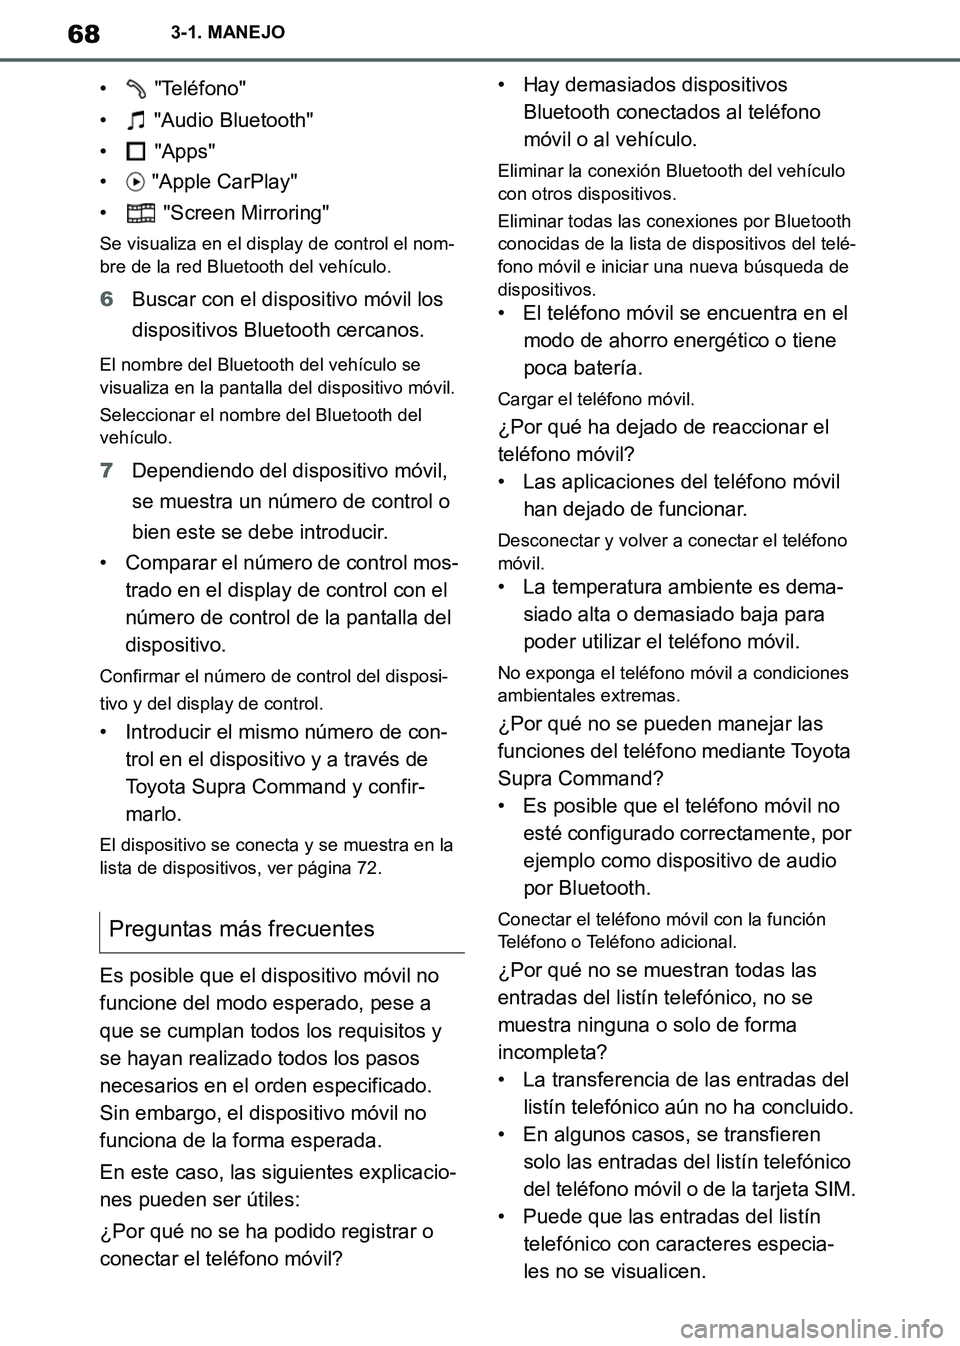 TOYOTA SUPRA 2019  Manuale de Empleo (in Spanish) 68
Supra Owners Manual_ES
3-1. MANEJO
•  "Teléfono"
•  "Audio Bluetooth"
•  "Apps"
•  "Apple CarPlay"
•  "Screen Mirroring"
Se visualiza en el display de control el nom-
bre de la red Blue